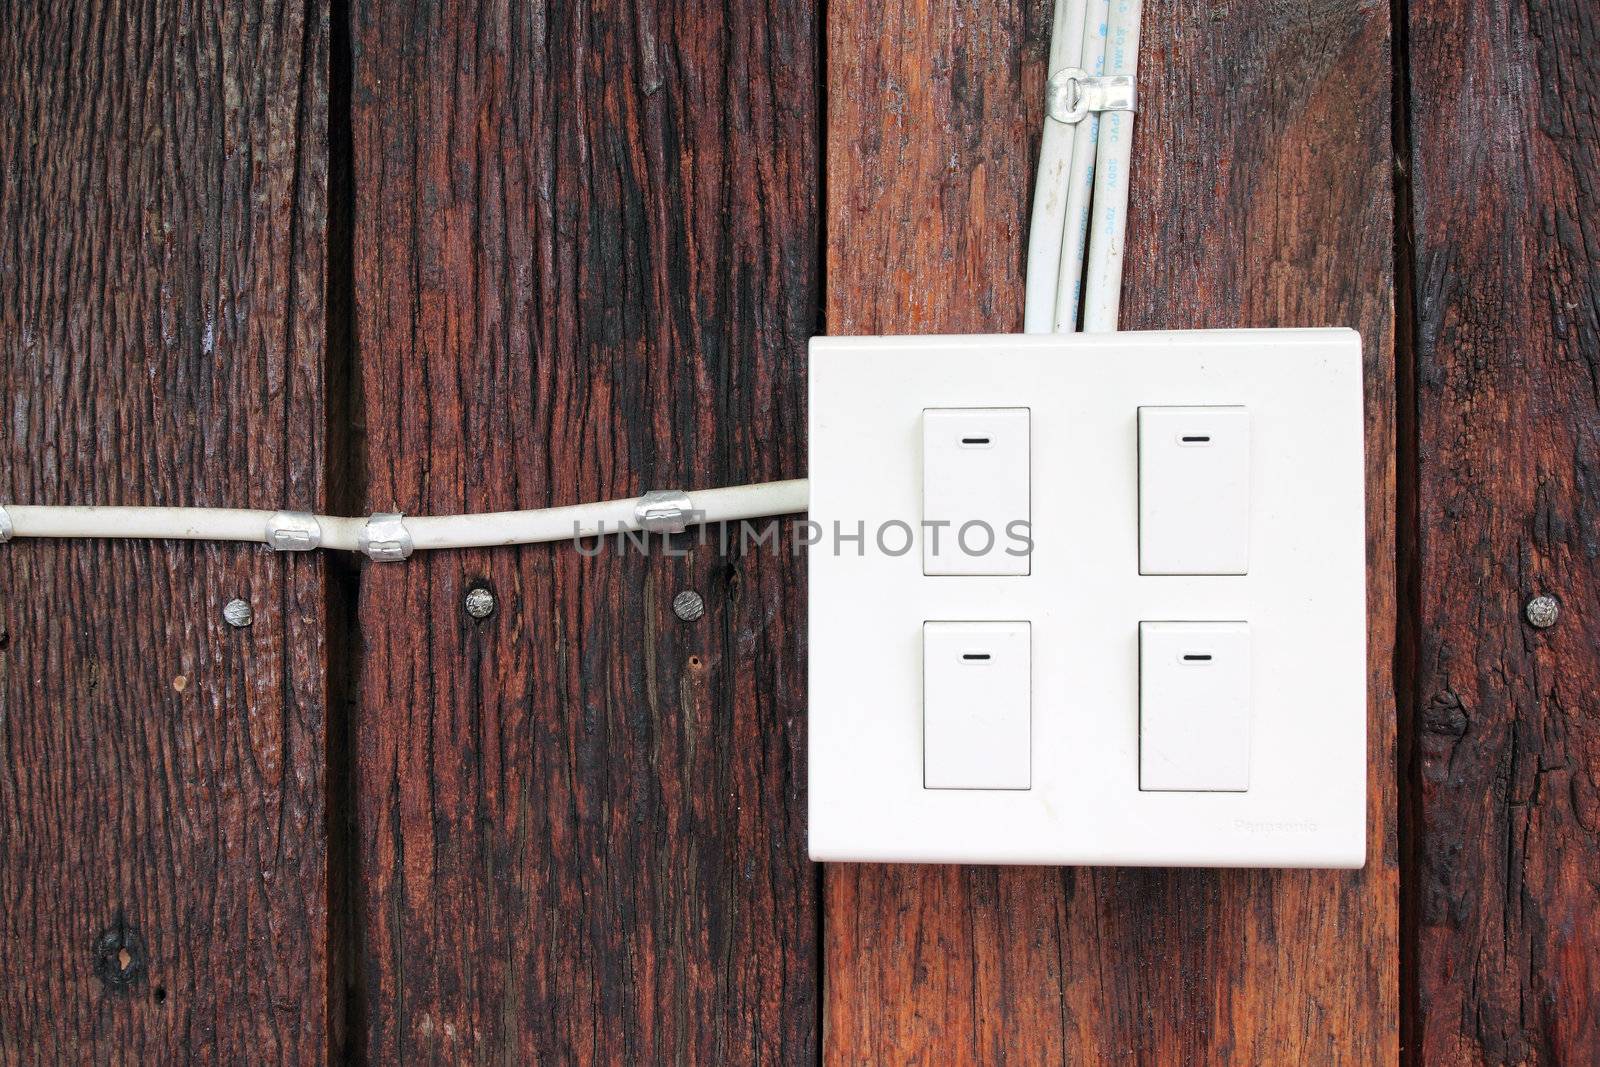 buzzer switch on wooden wall by geargodz